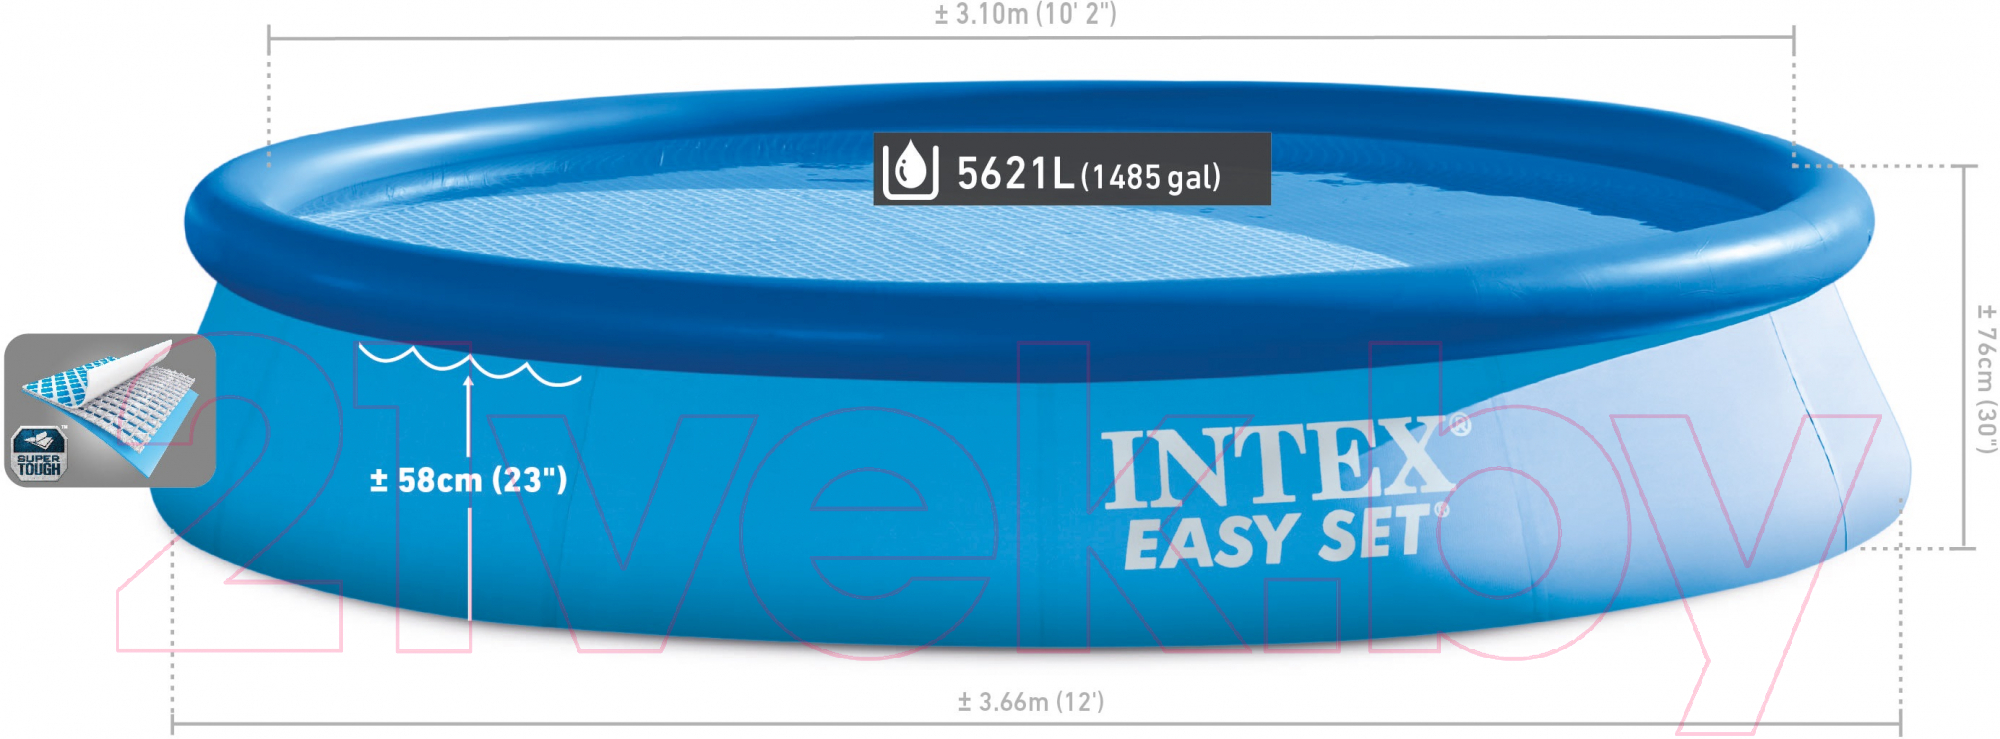 Надувной бассейн Intex Easy Set / 56420/28130 (366x76)